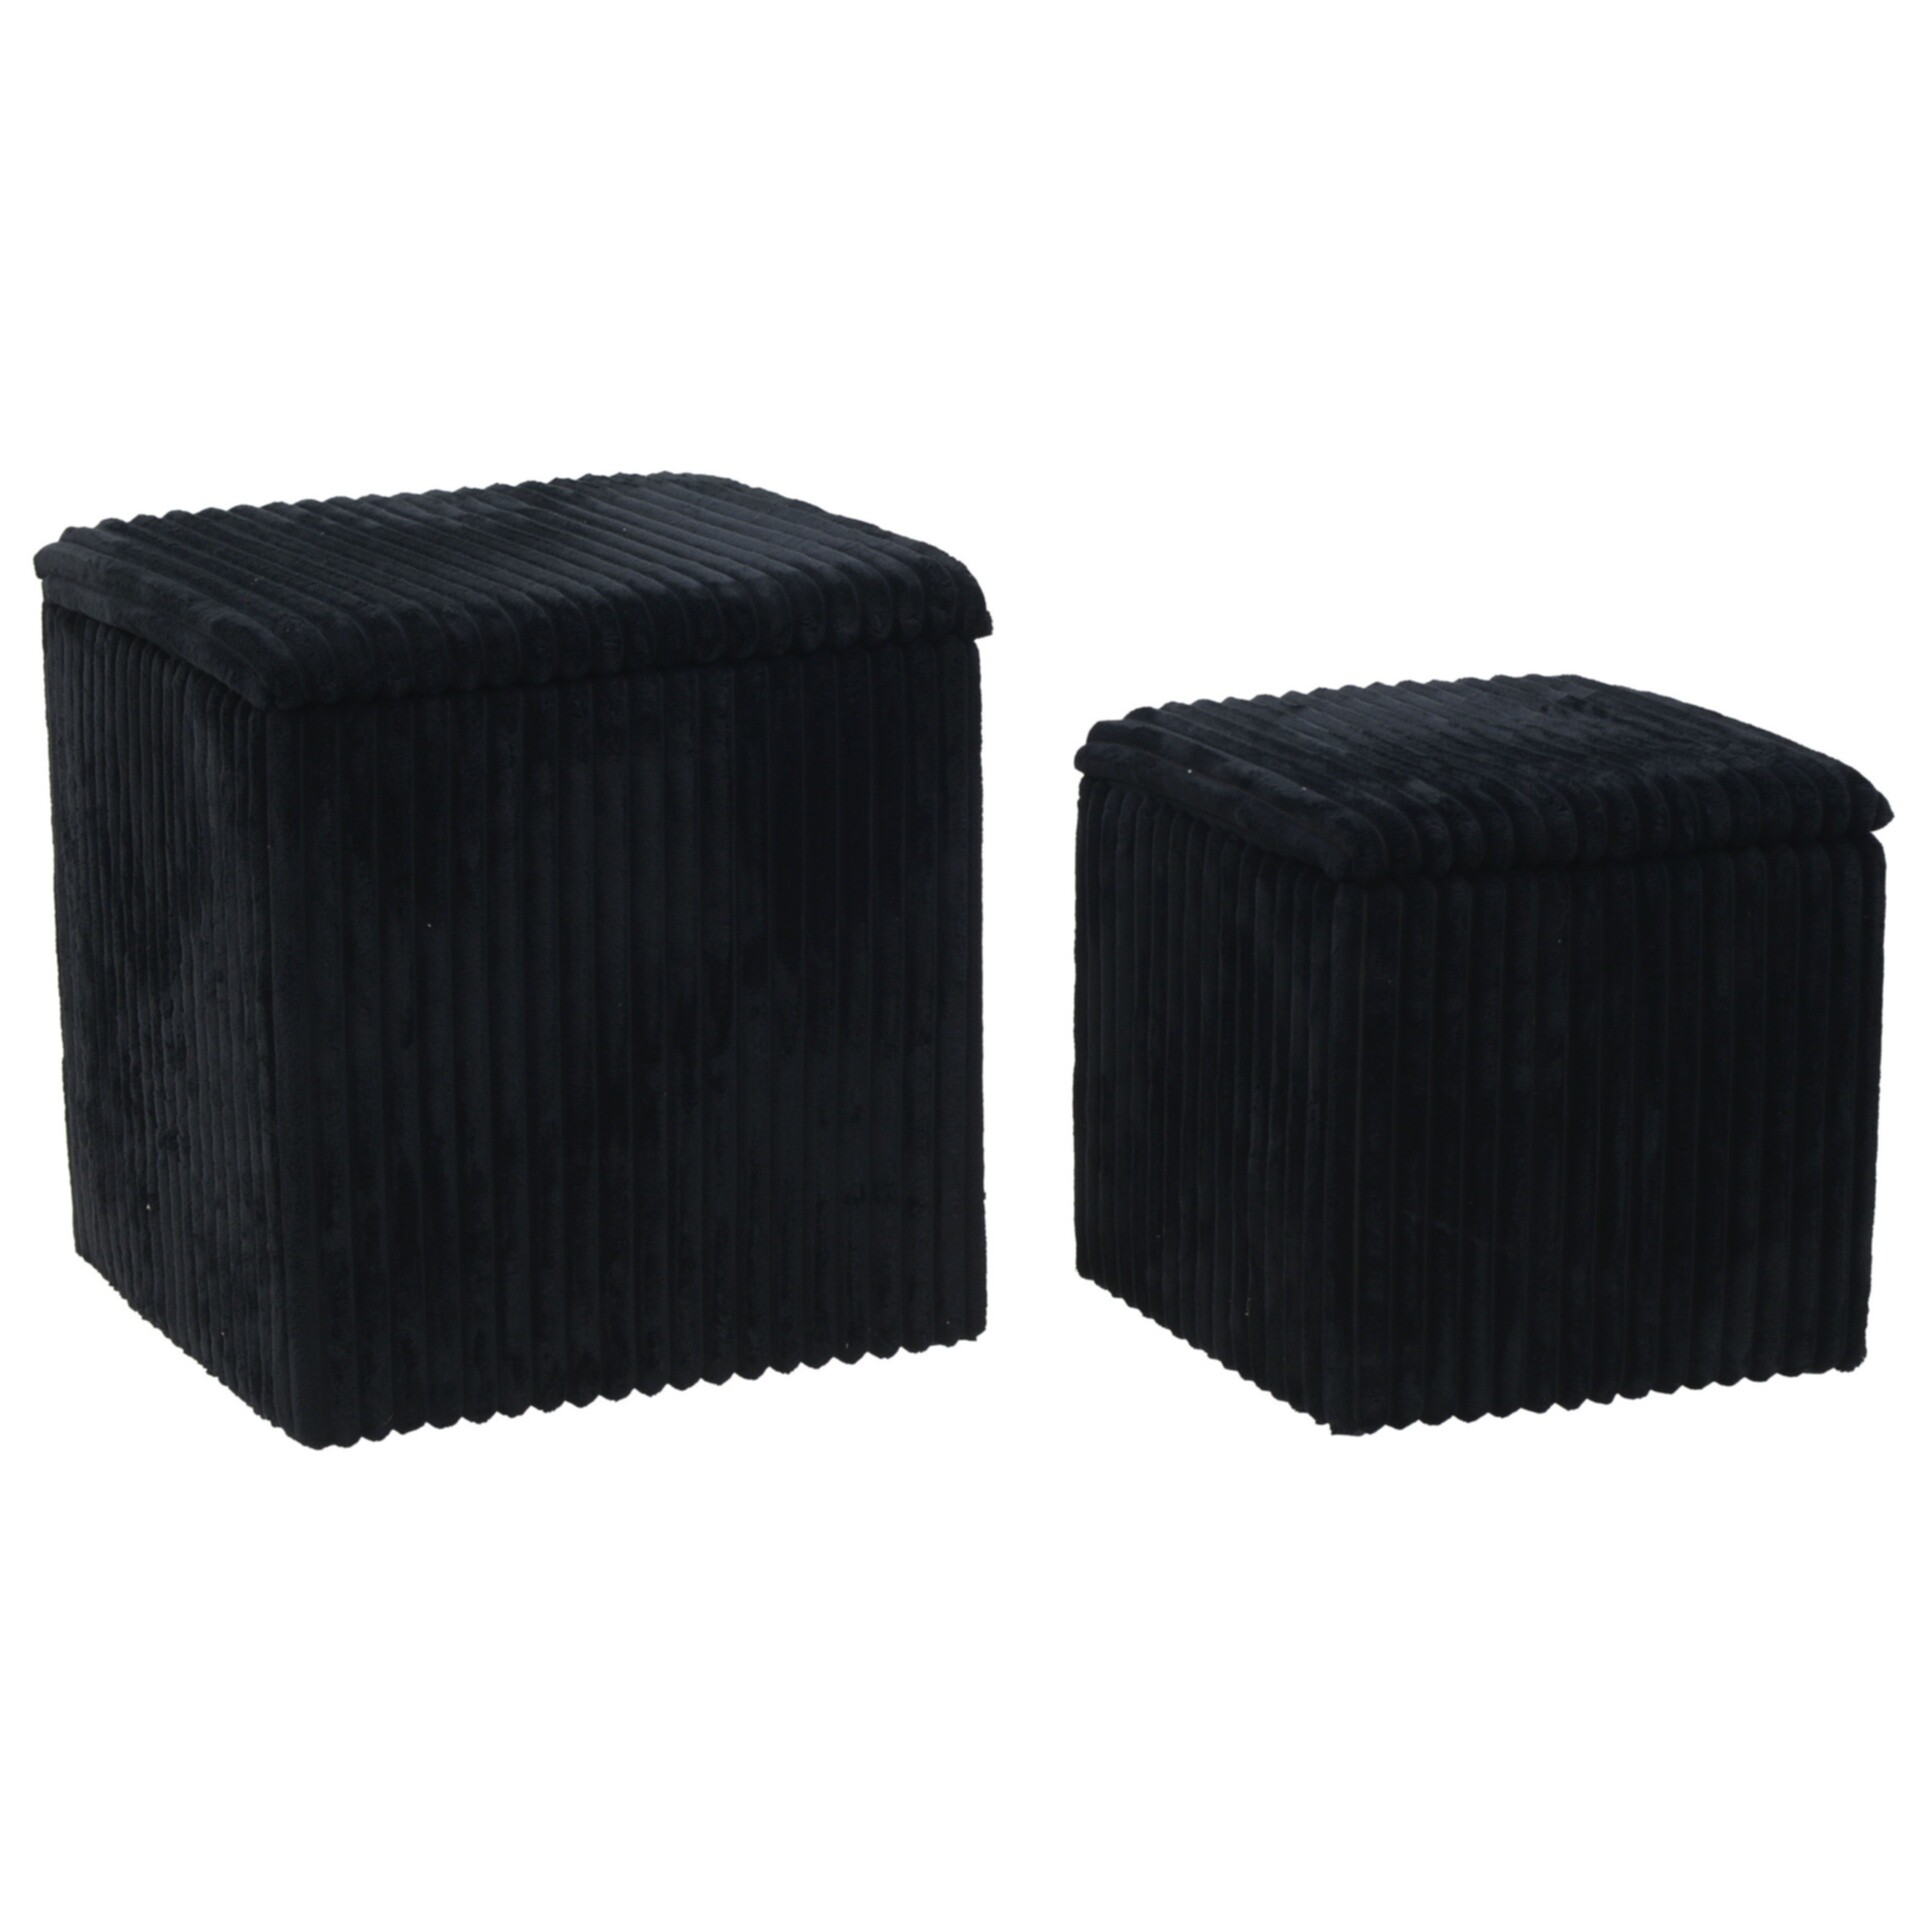 Пуфы квадратные мягкие с ящиком для хранения набор 2 шт. черные